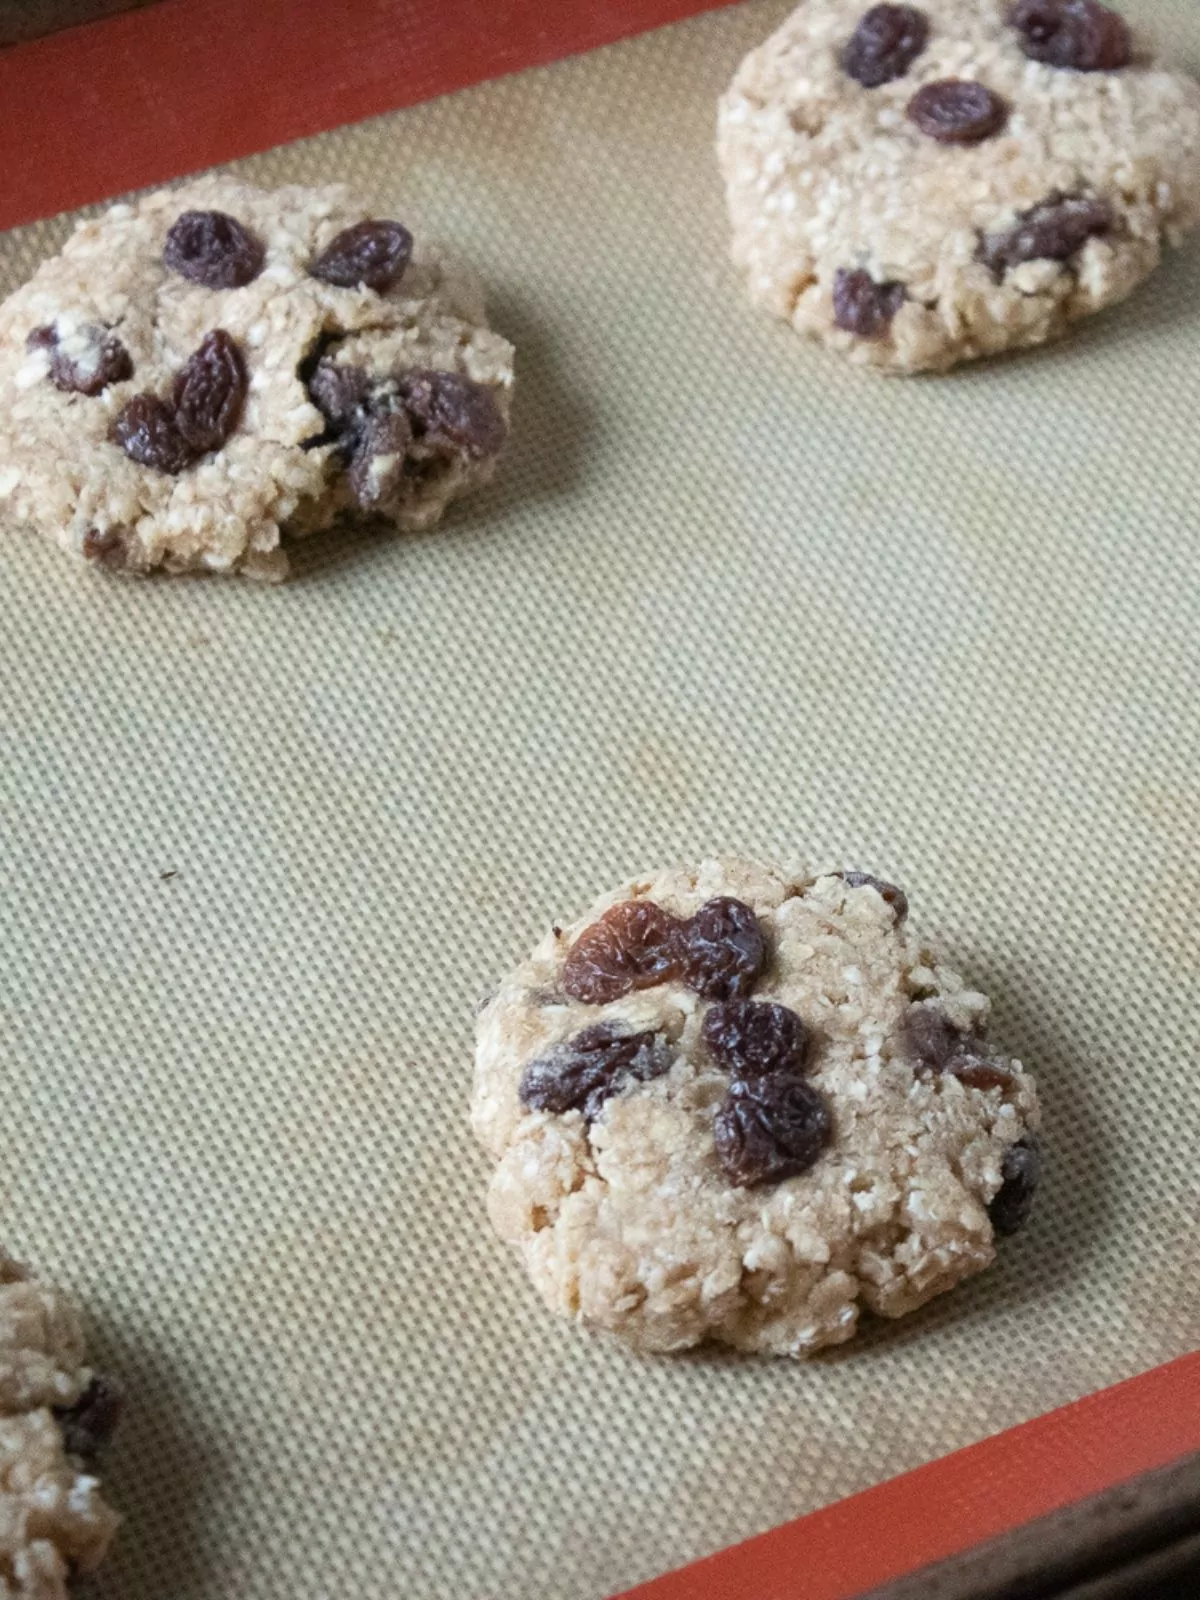 oatmeal raisin cookies on silpat baking tray.